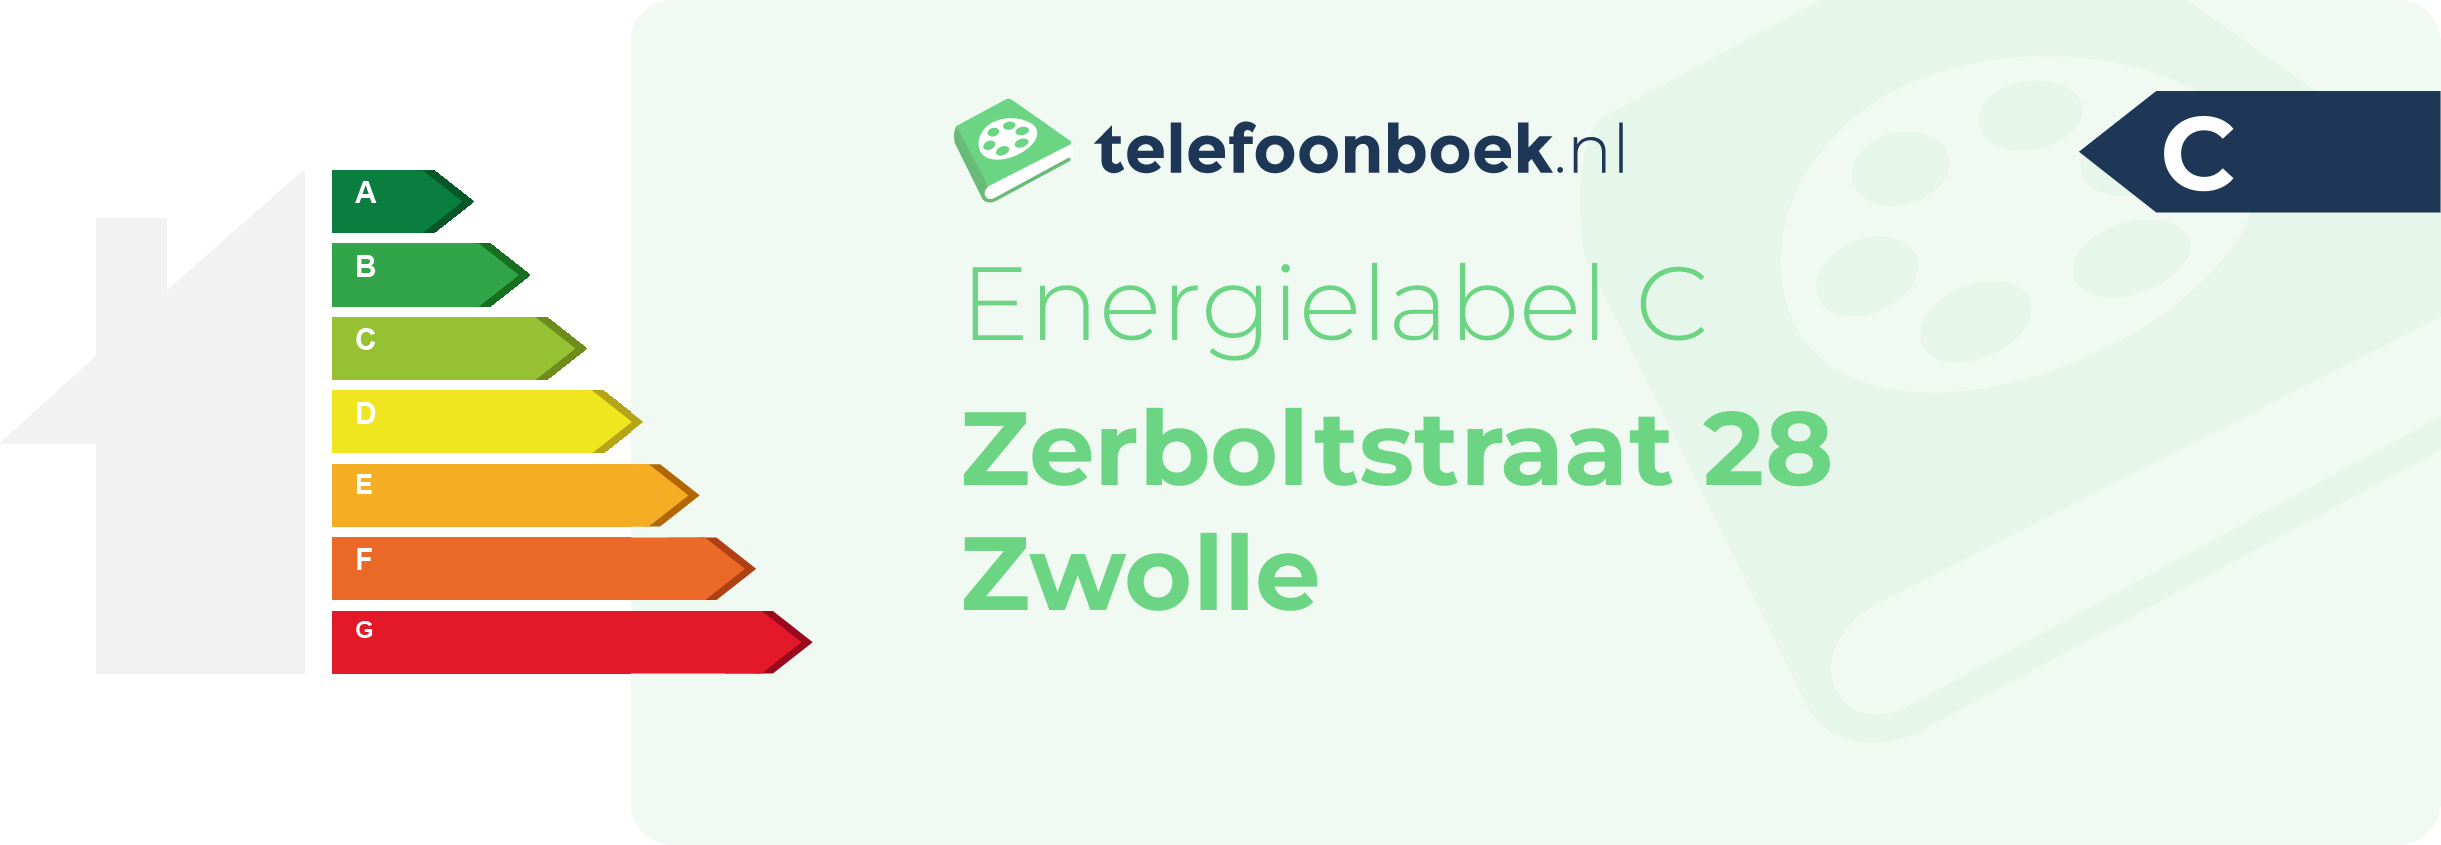 Energielabel Zerboltstraat 28 Zwolle